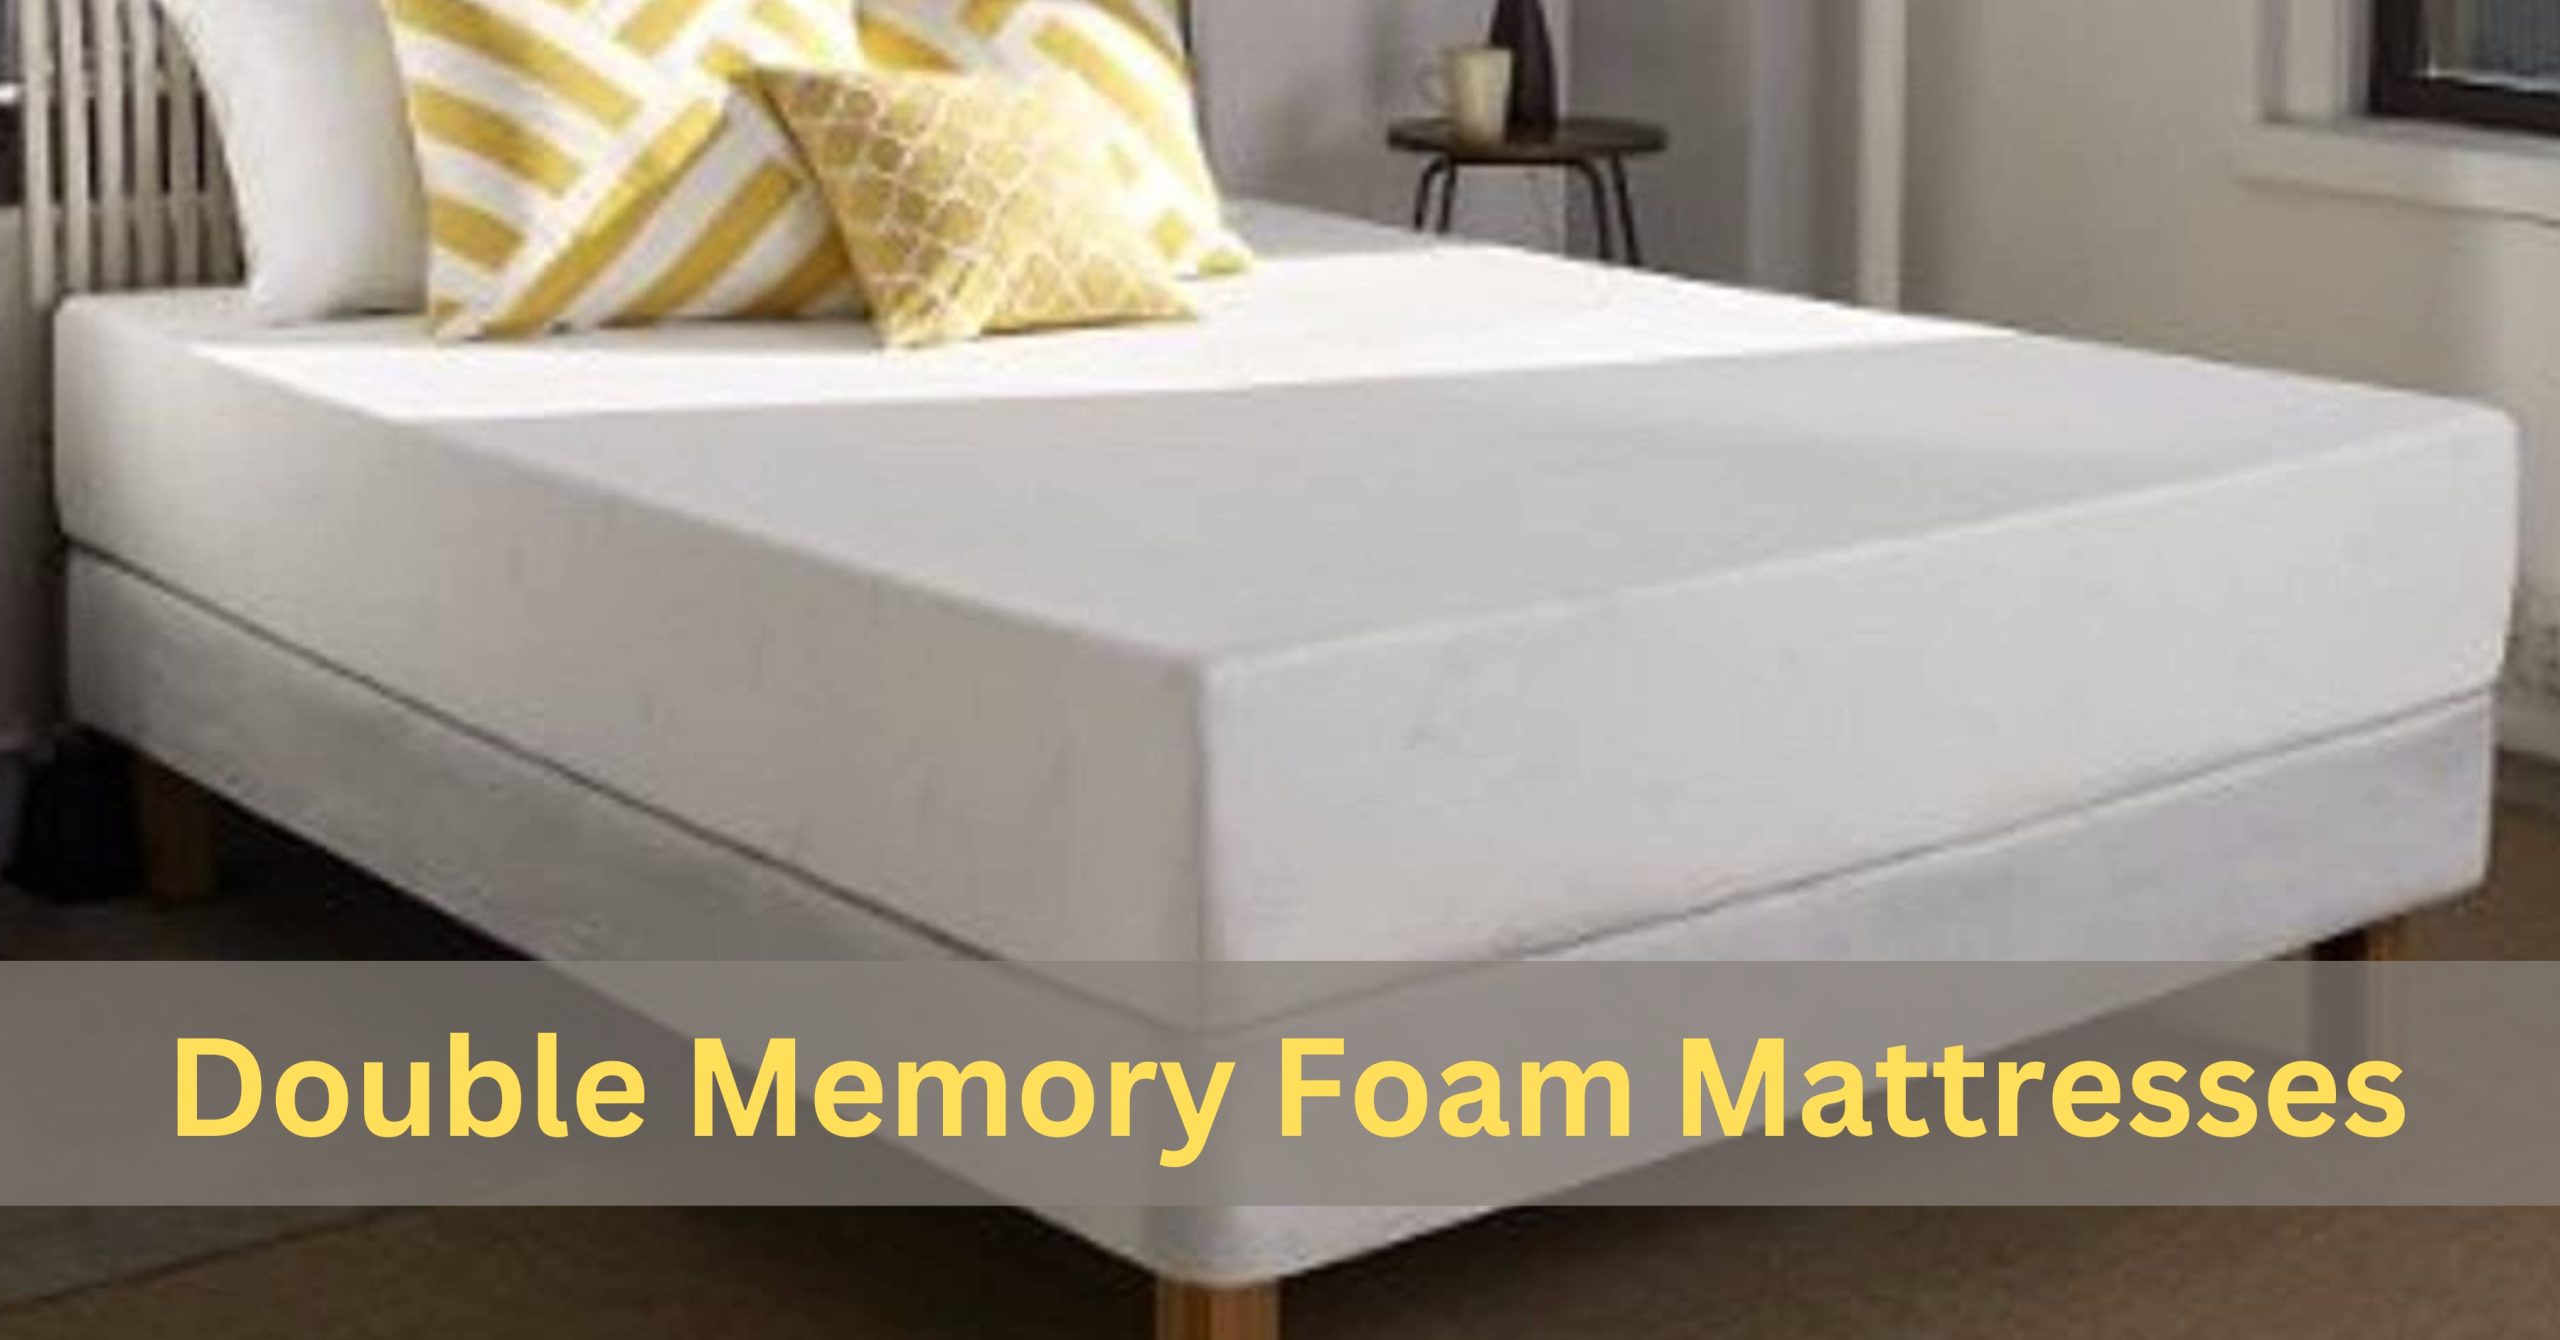 Double Memory Foam Mattresses